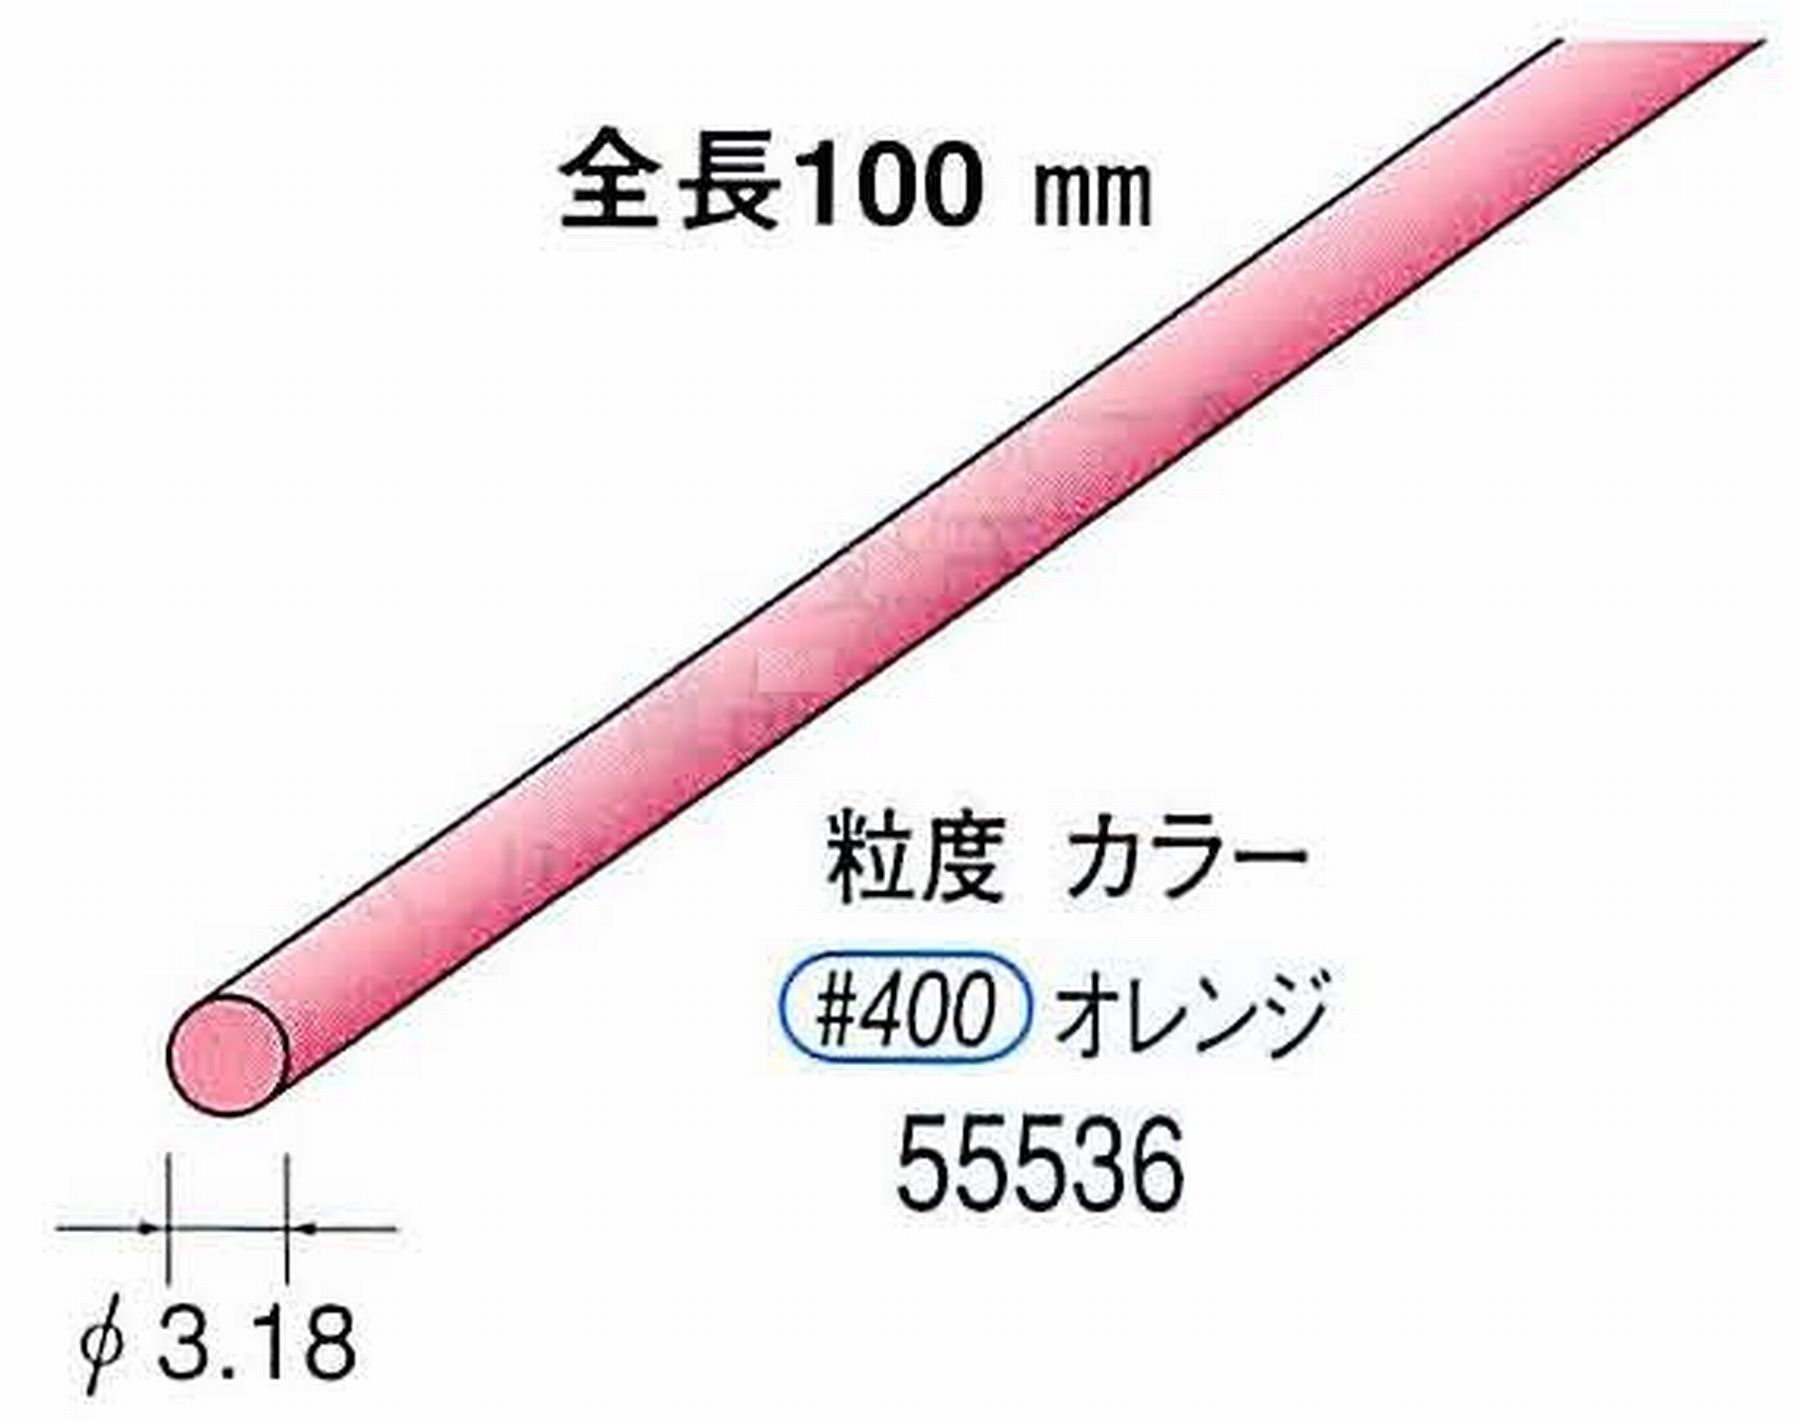 ナカニシ/NAKANISHI セラファイバー砥石 全長100mm オレンジ φ3.18mm 55536